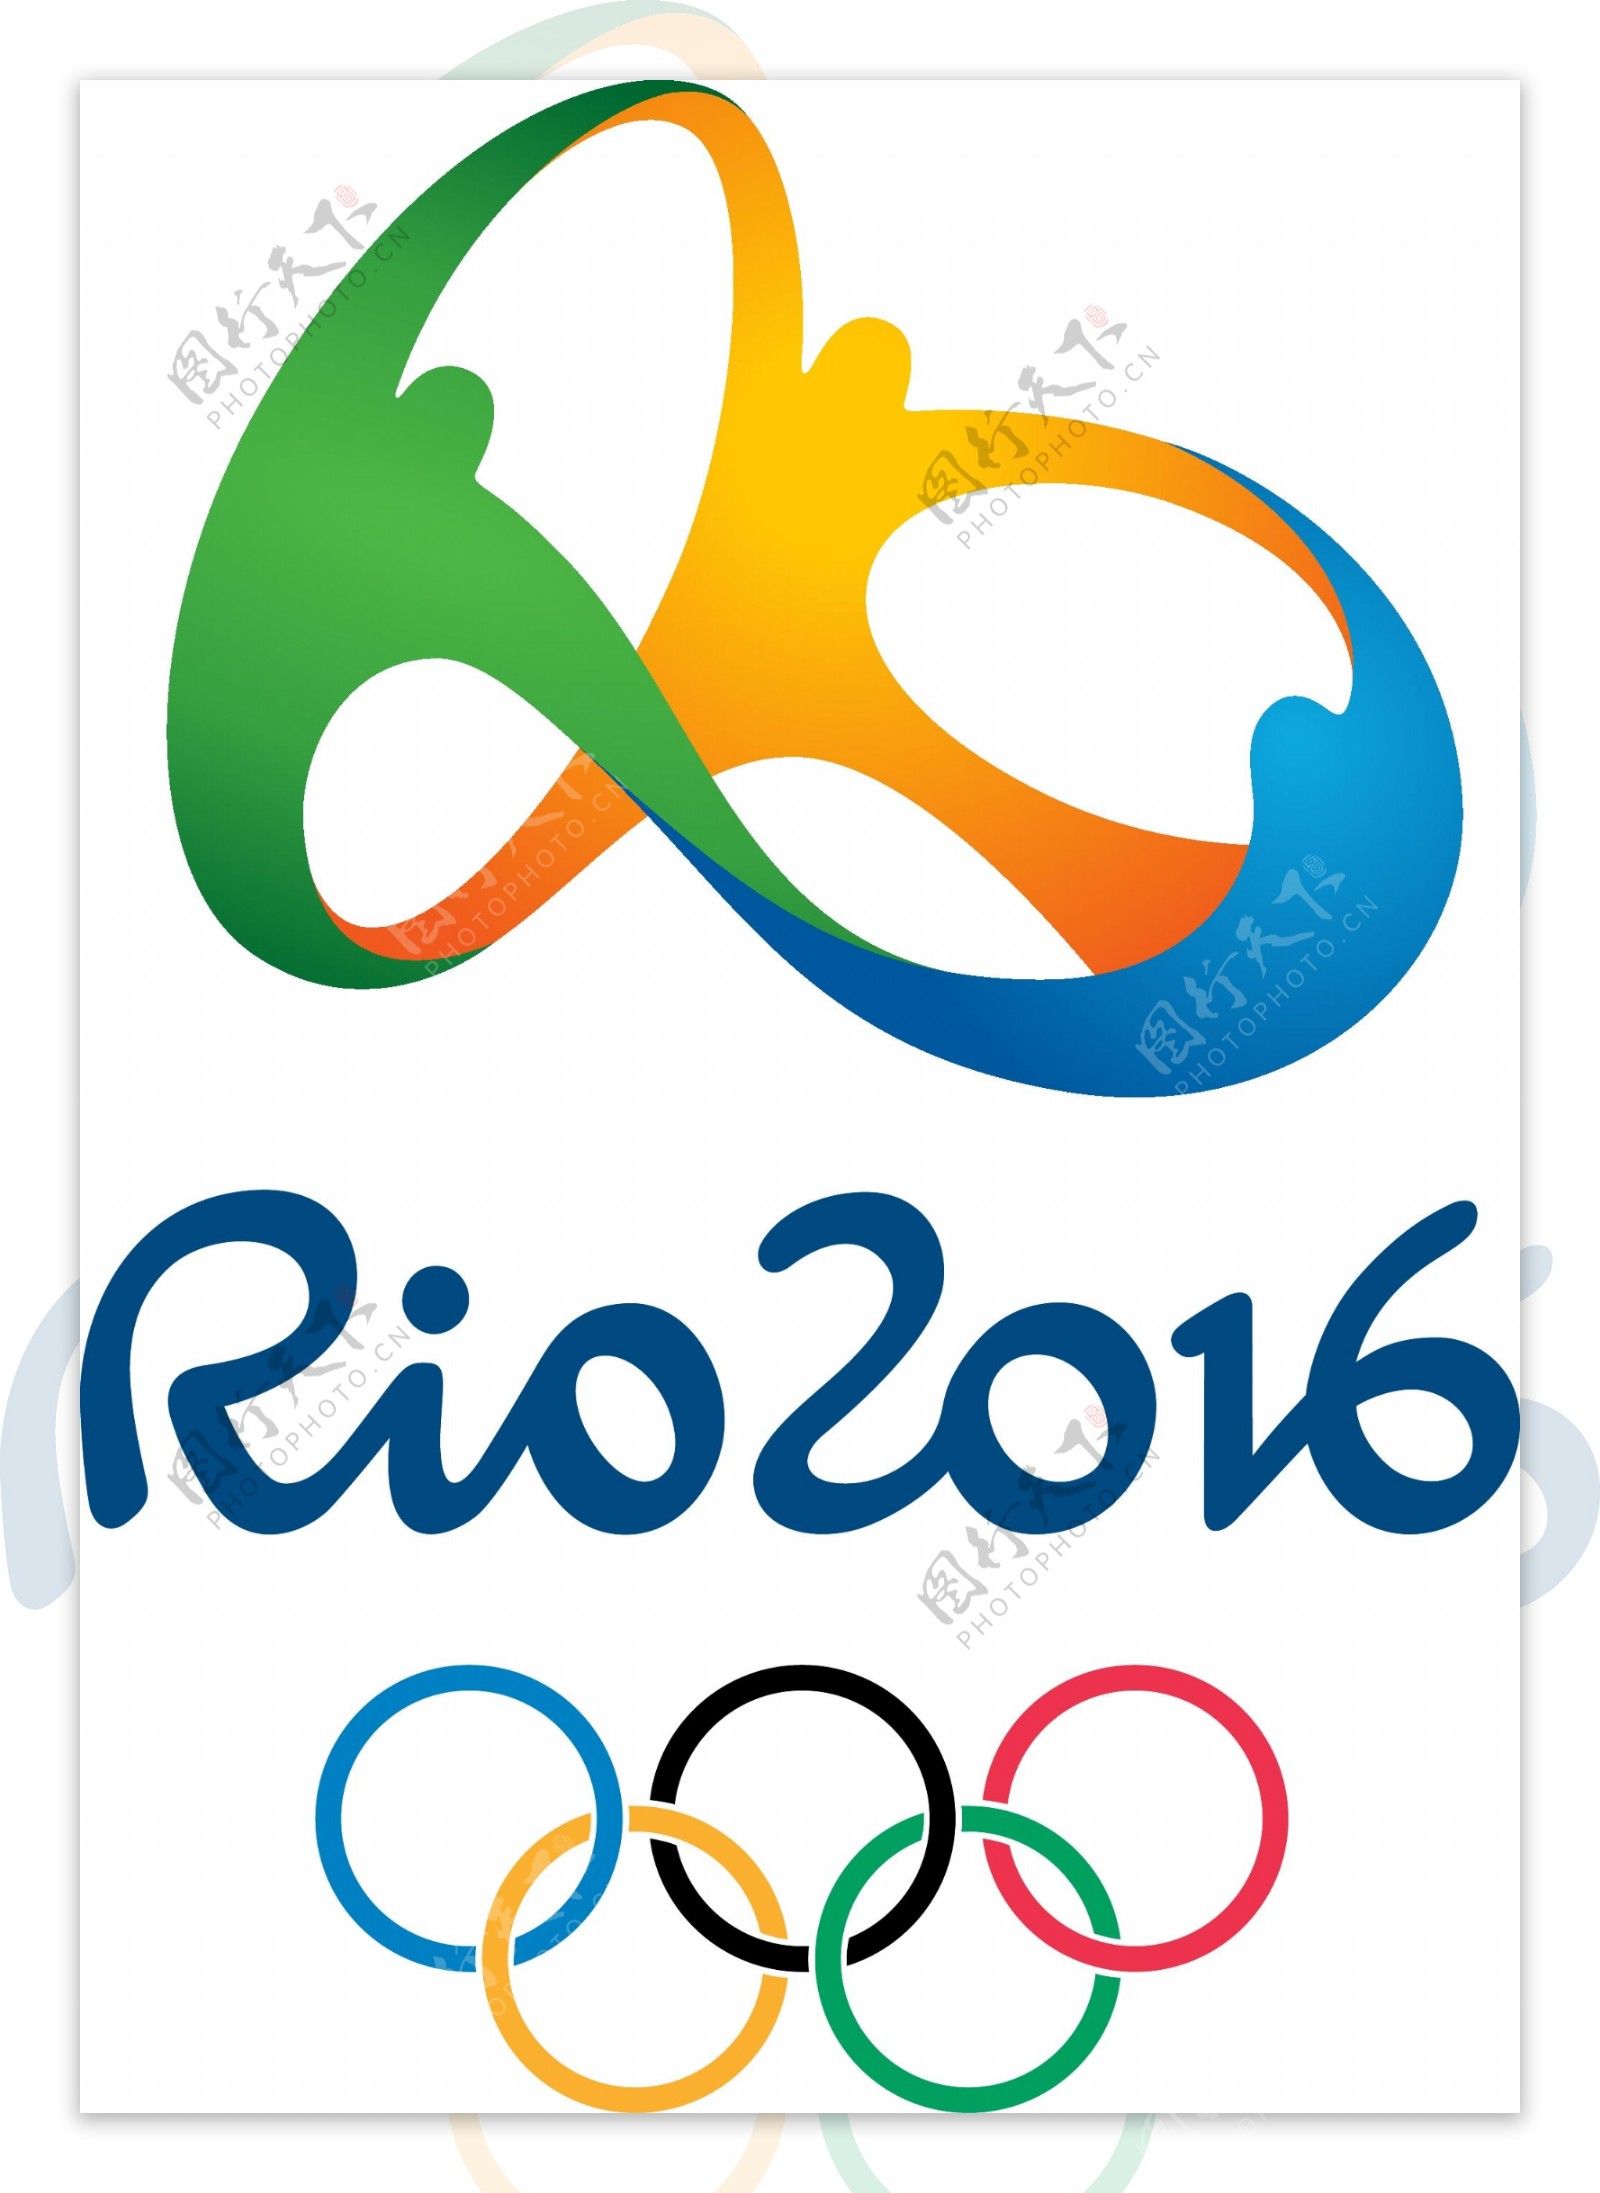 2016奥运会标志矢量图下载